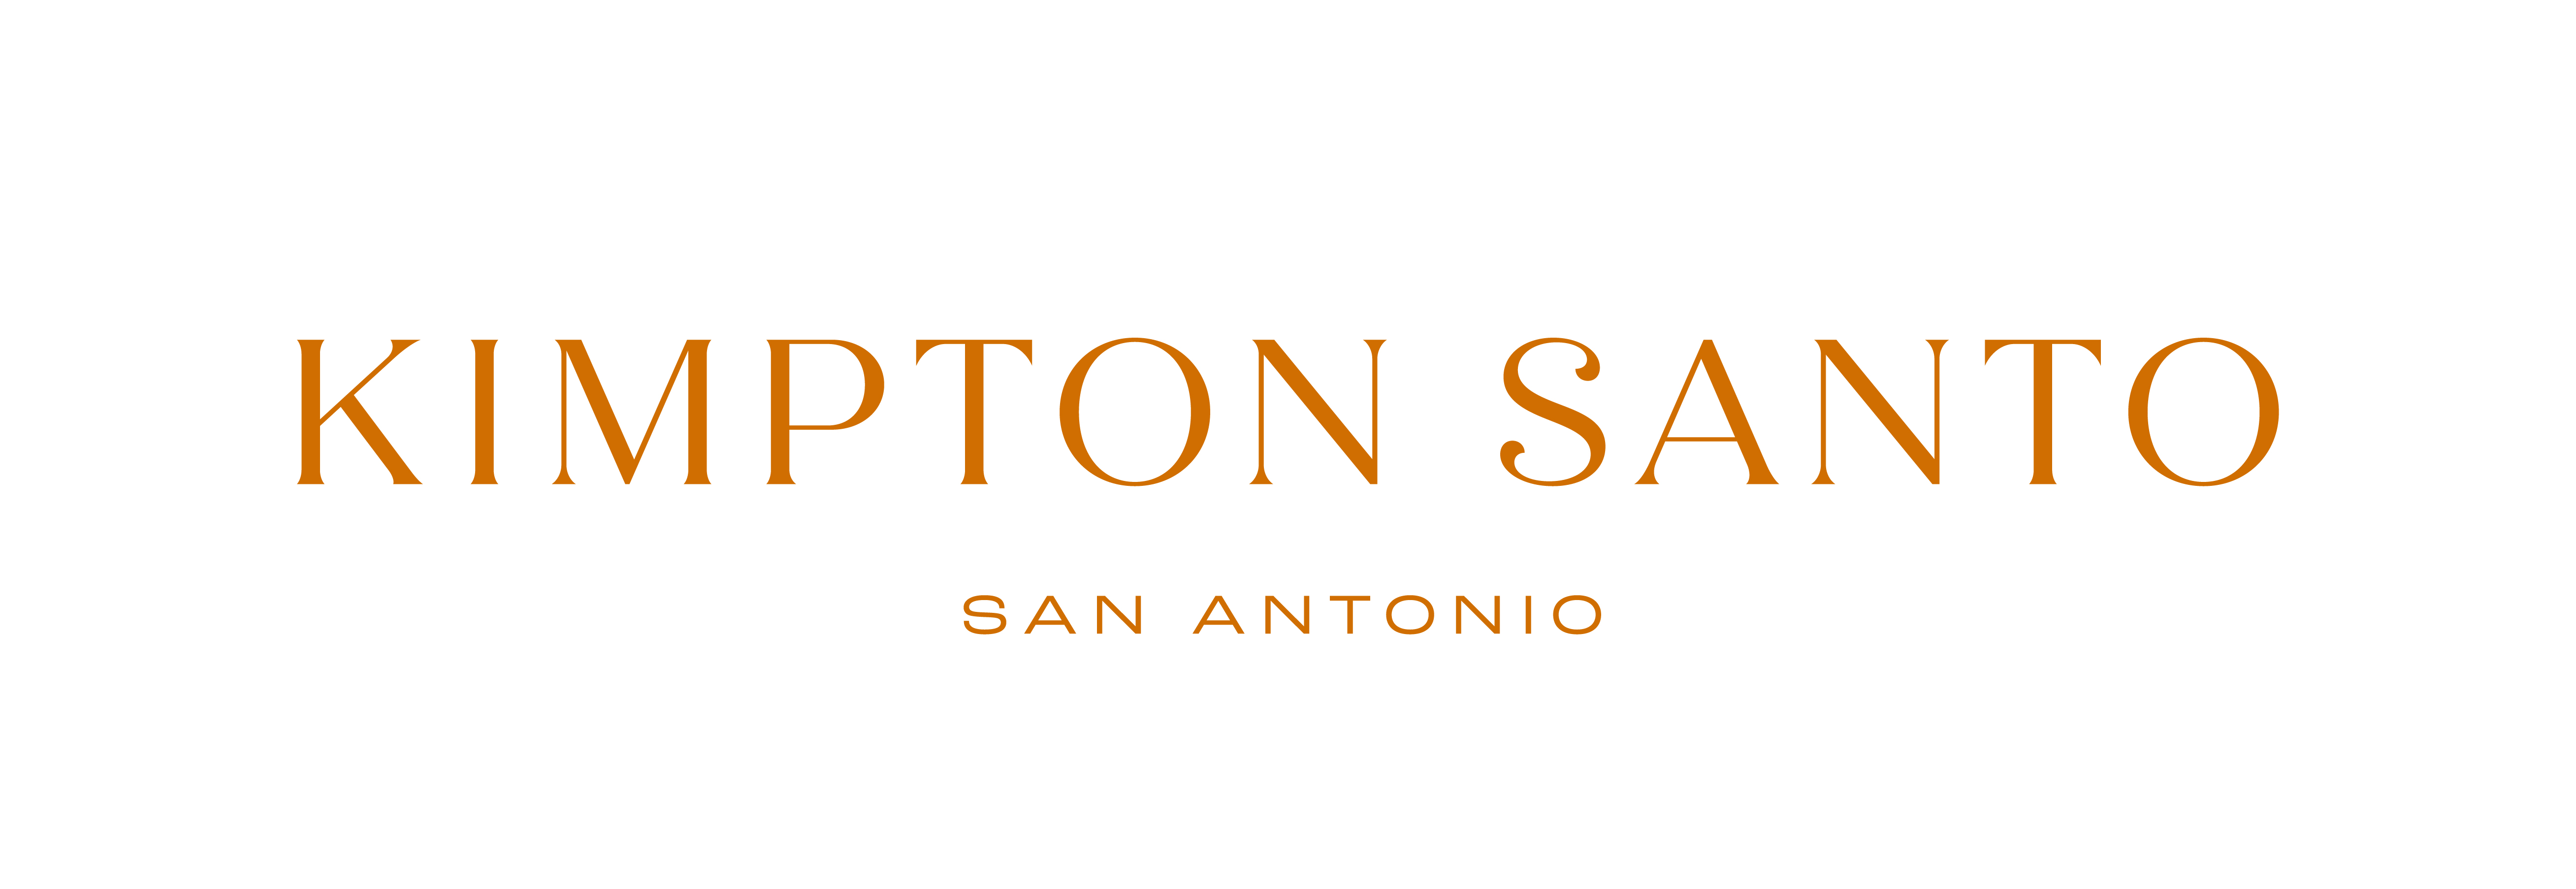 Kimpton Santo Announced